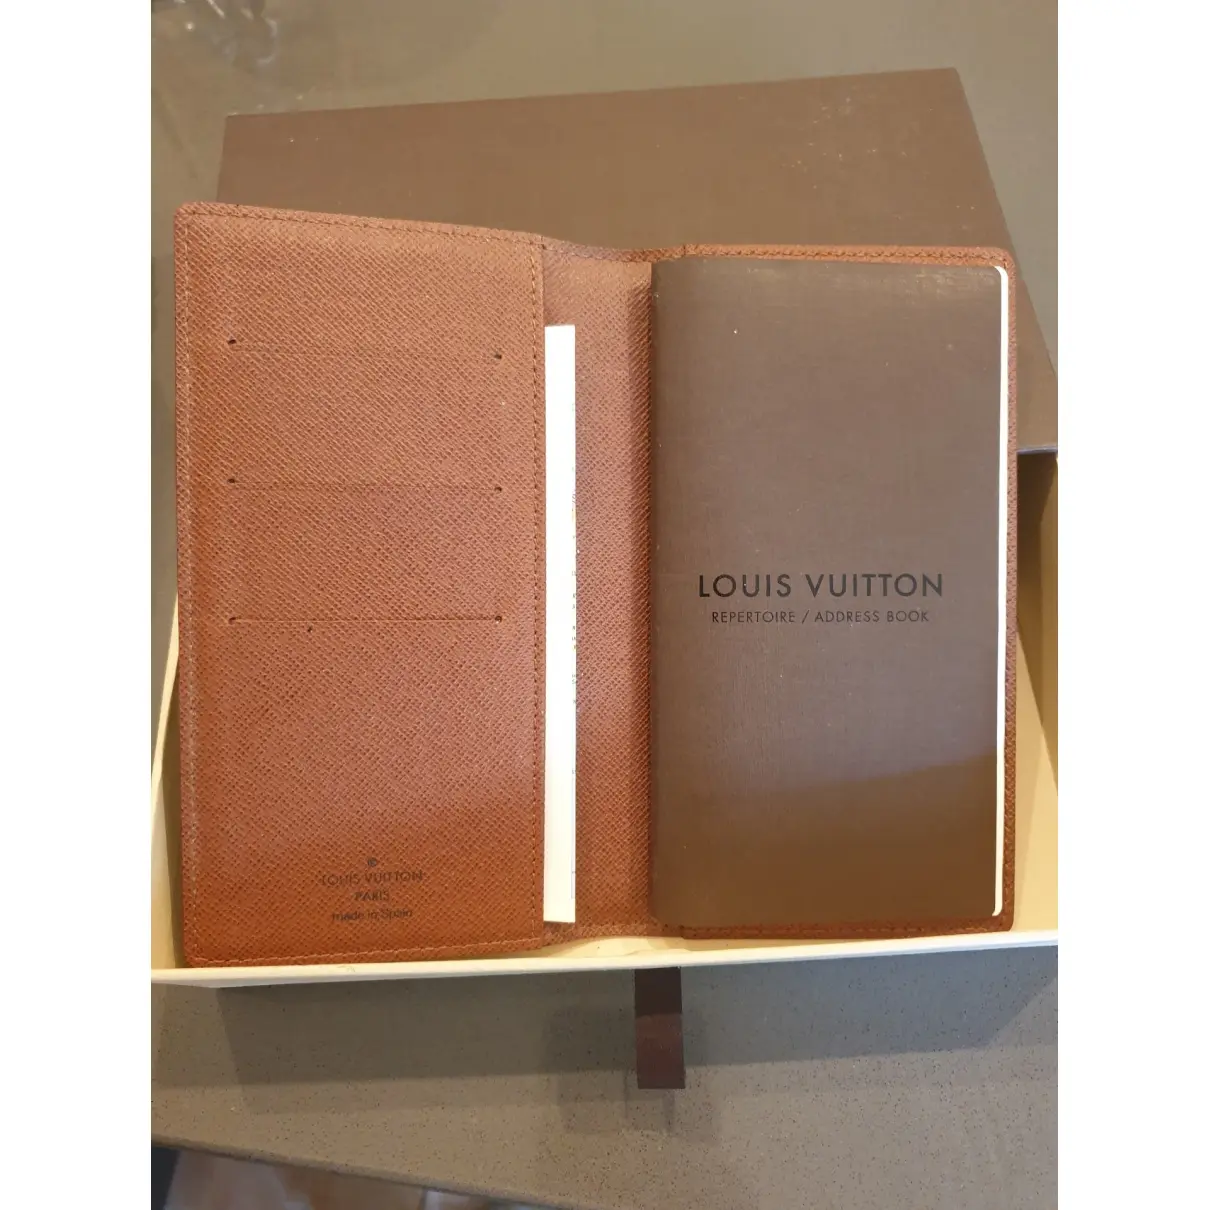 Buy Louis Vuitton Cloth memento online